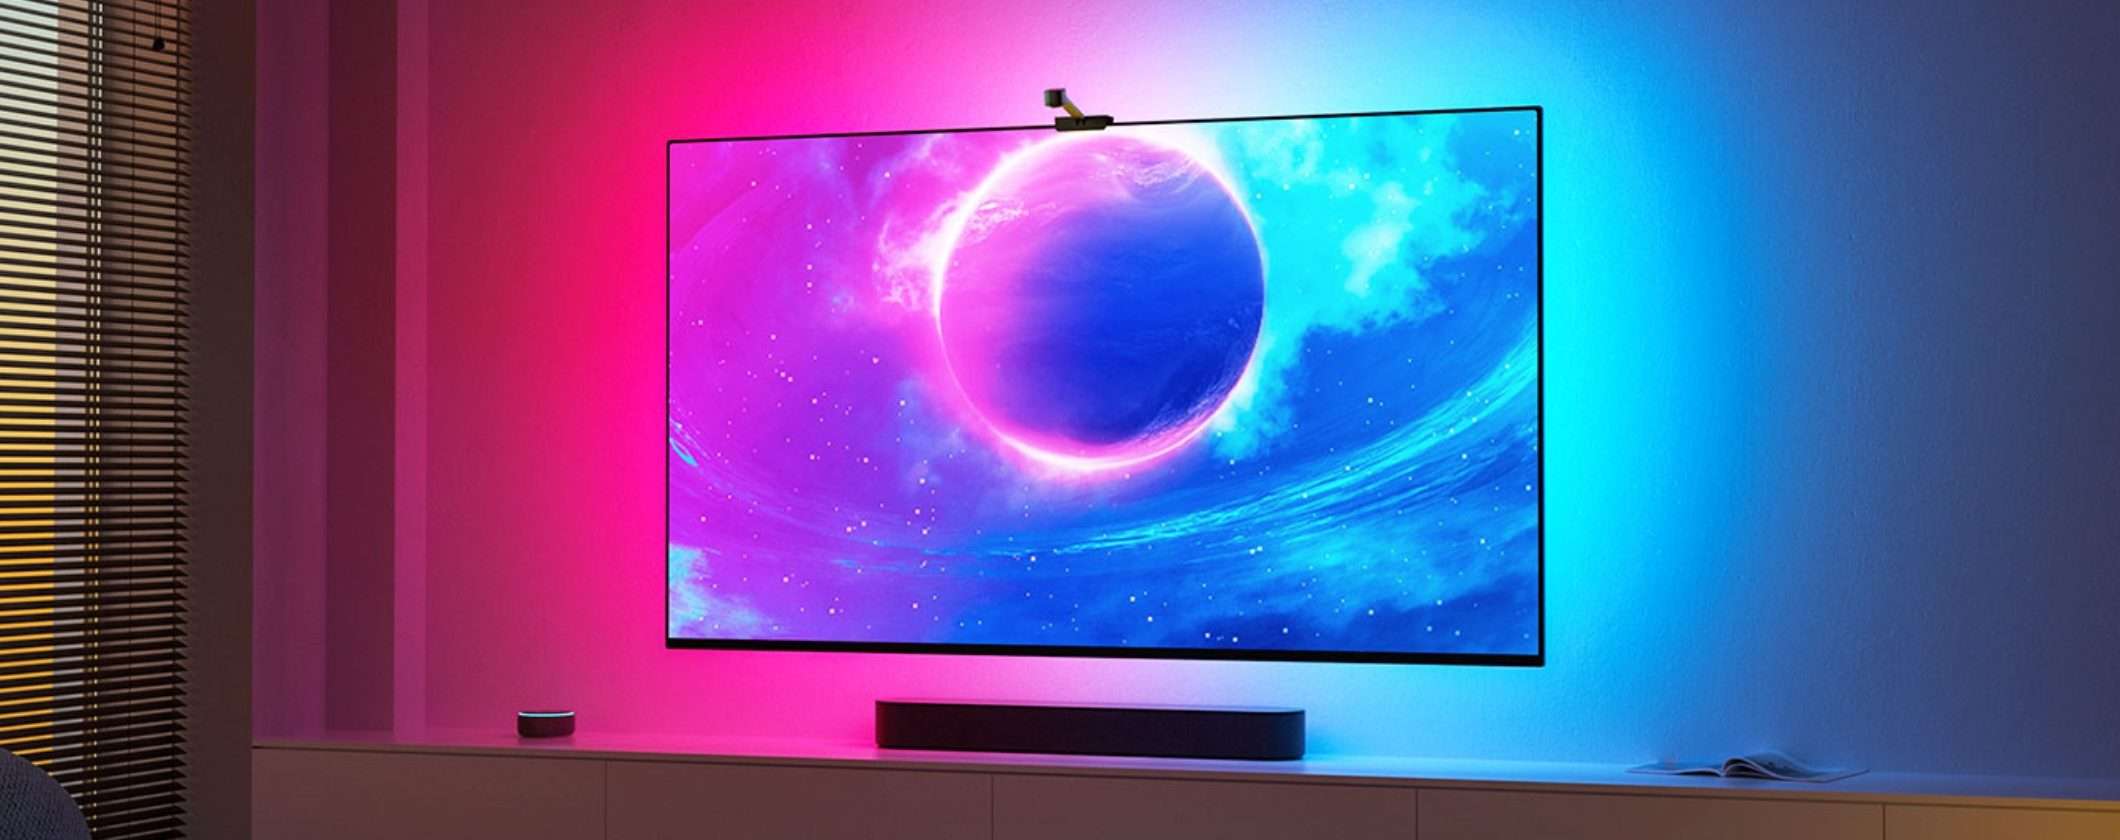 Striscia LED TV Interattiva: nuova frontiera dell'illuminazione a prezzo top